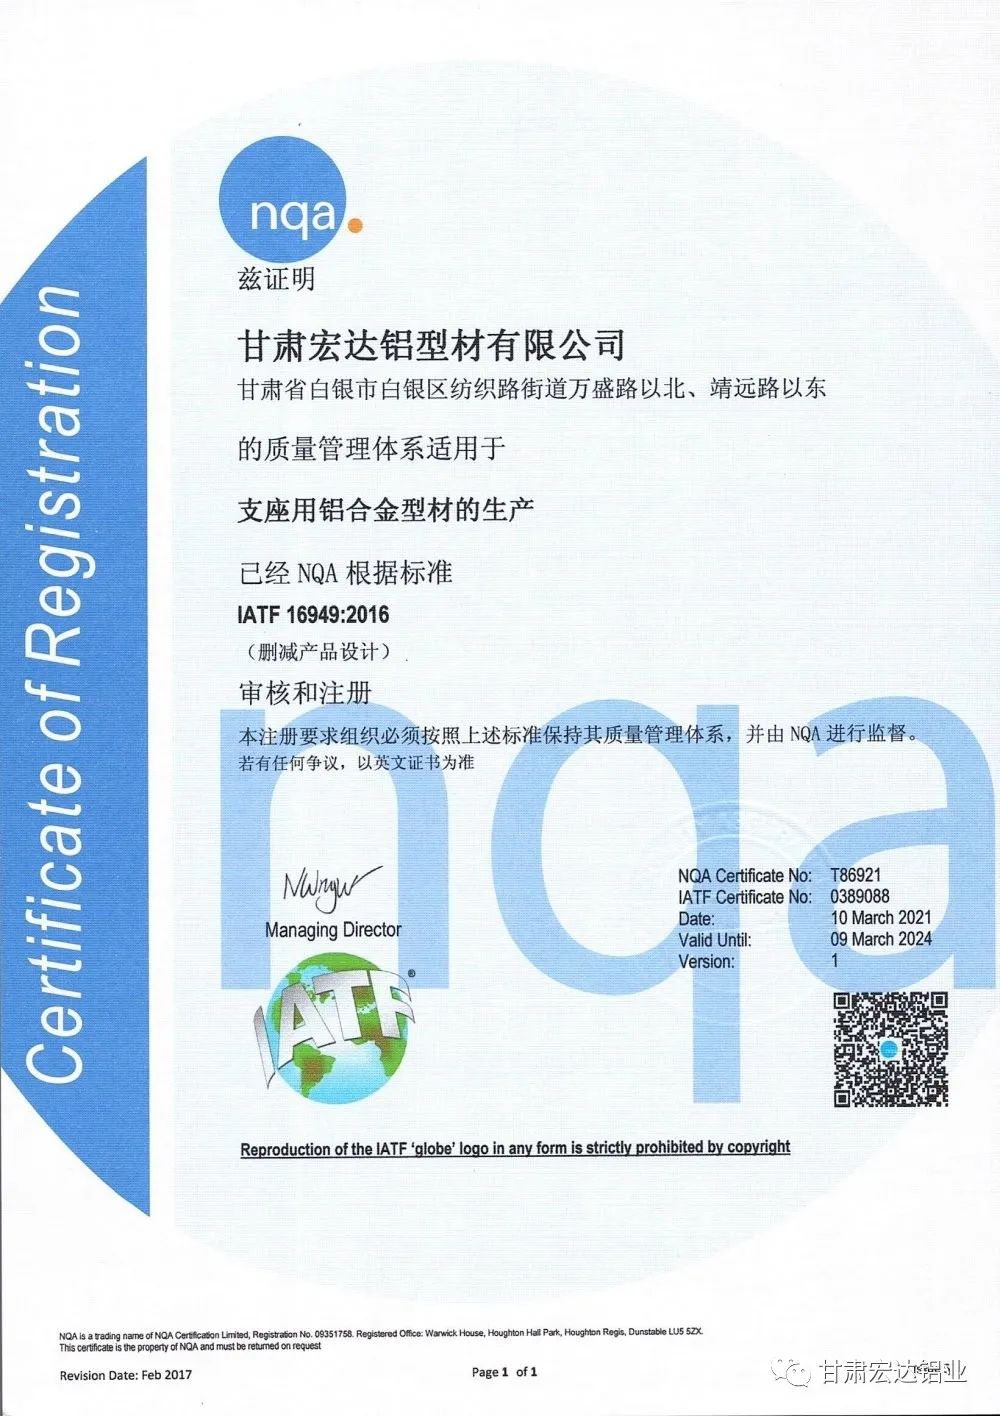 甘肃宏达铝业顺利通过IATF16949：2016汽车管理体系认证